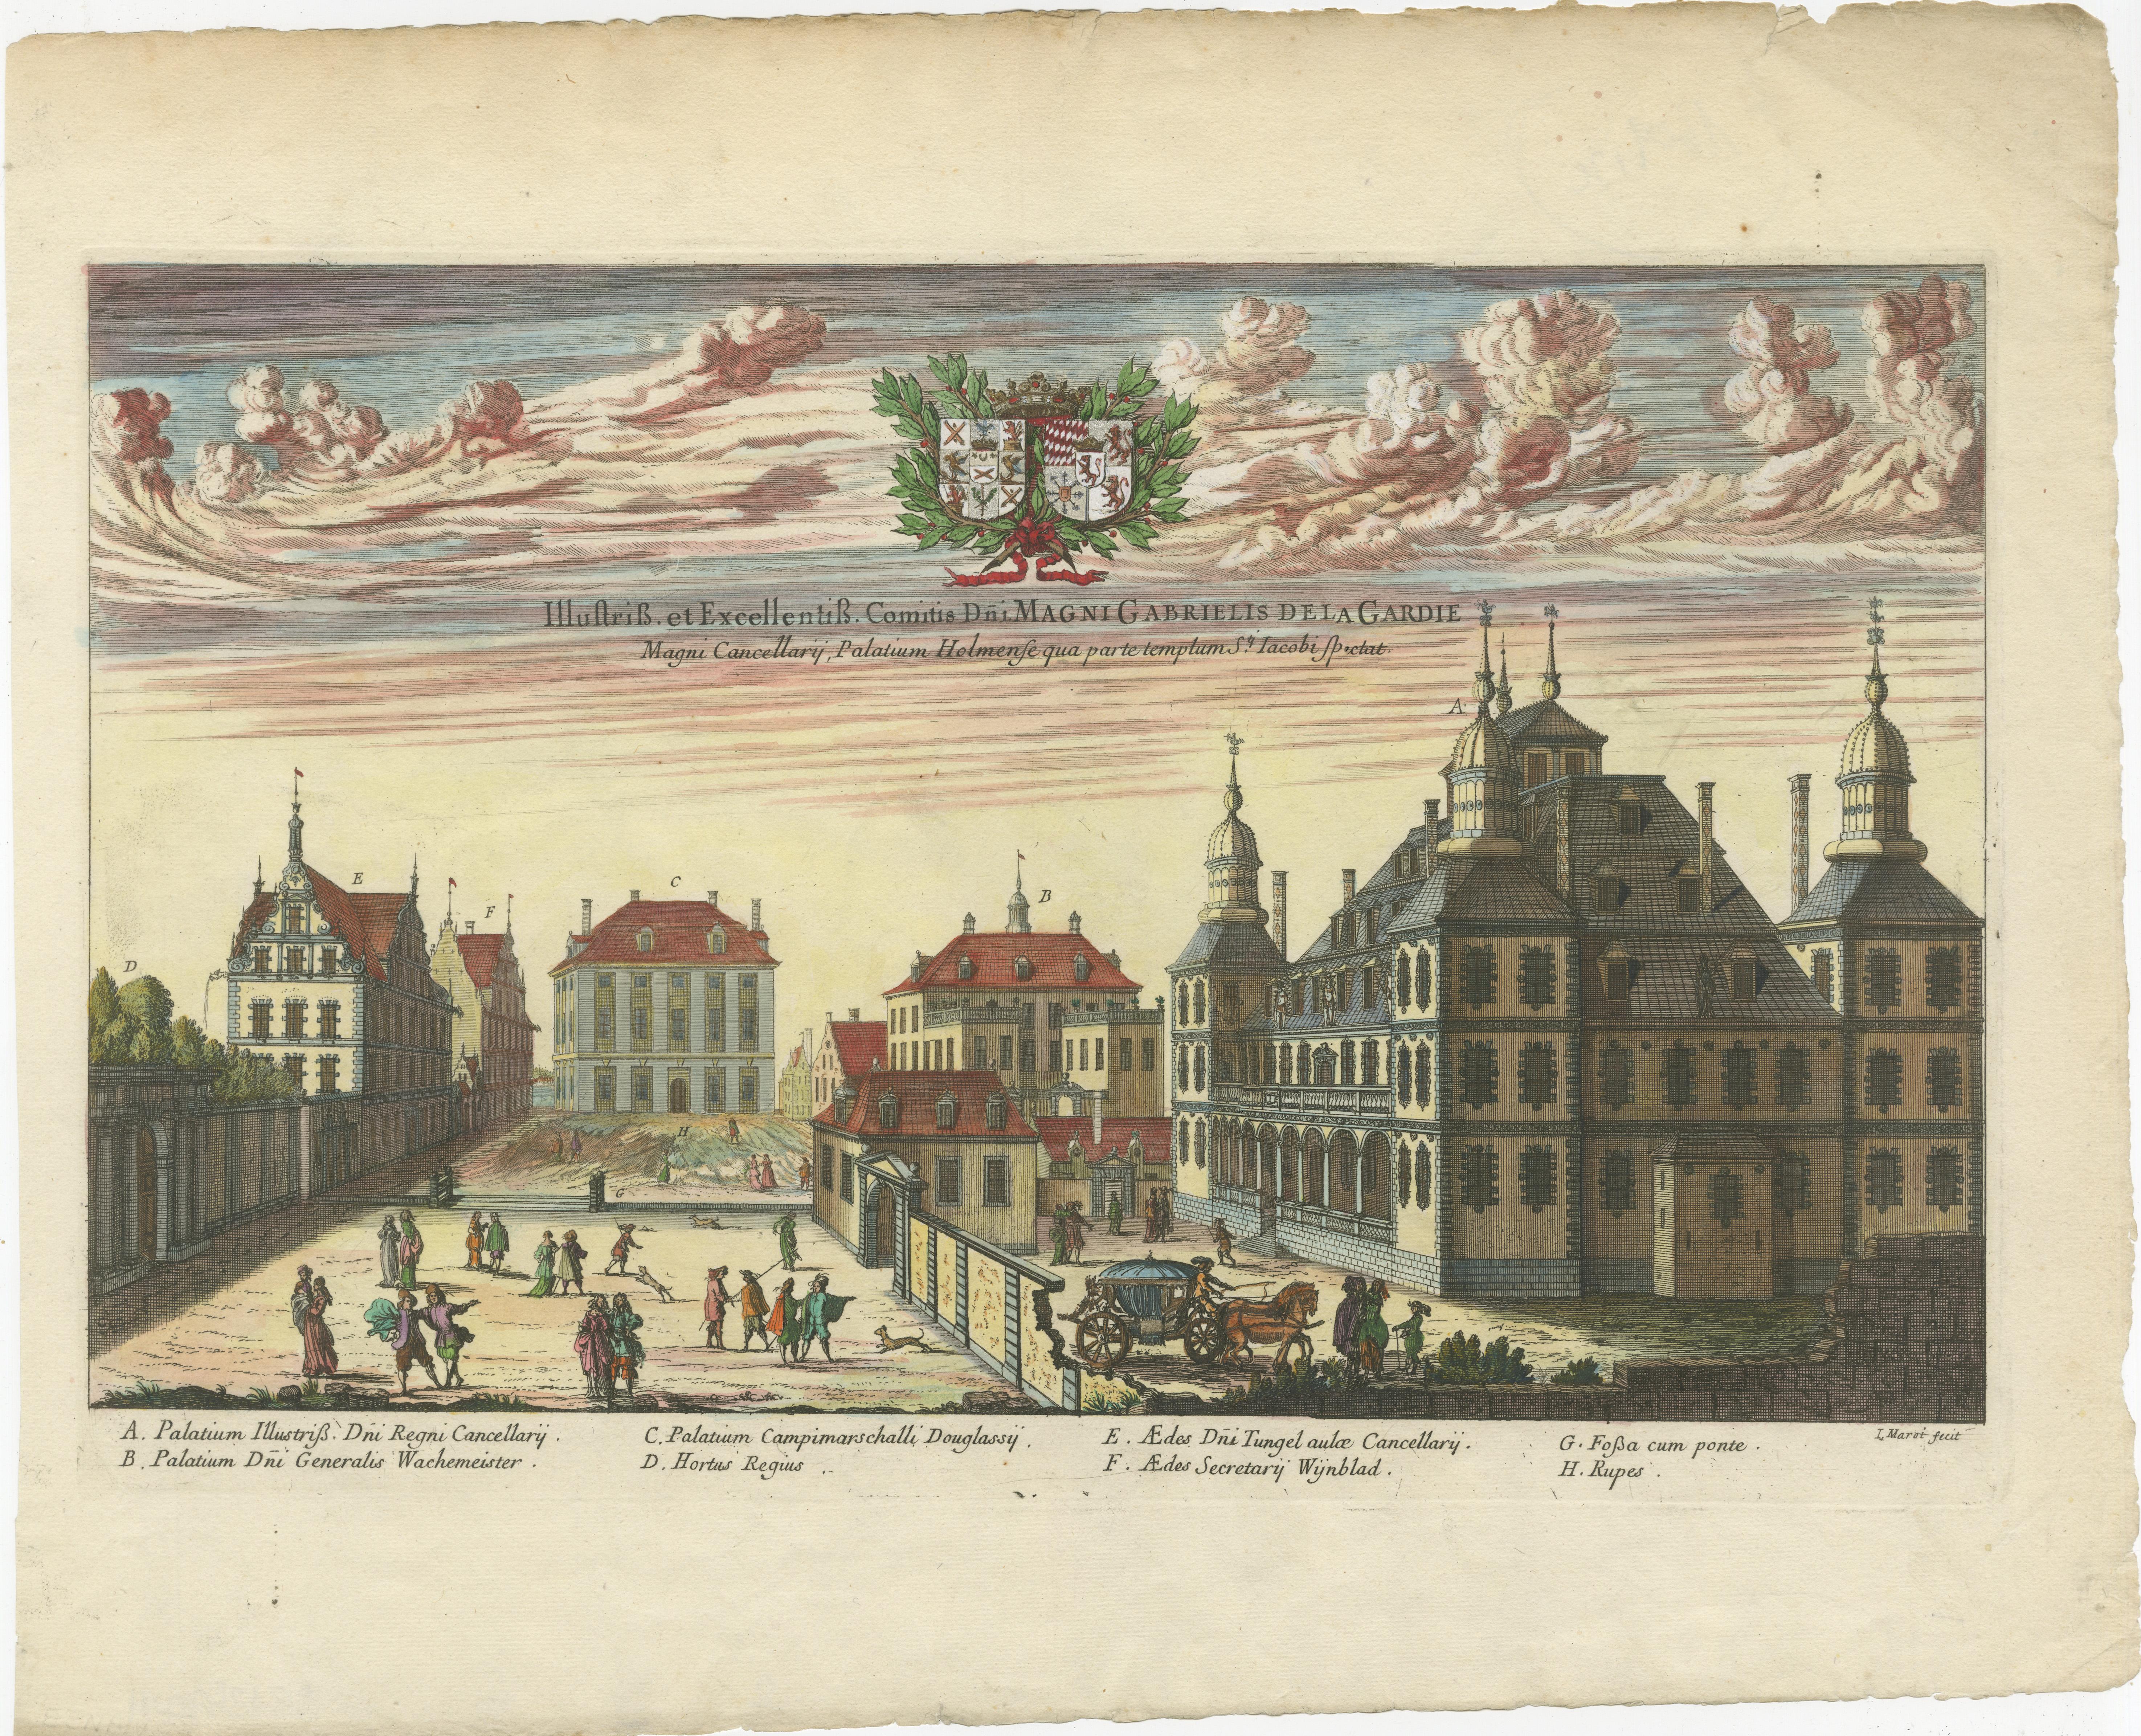 Makalös oder De la Gardieska Palast, aus dem Jahr 1643. Blick von der Jakobskirche. Spätere Funktion als Arsenal und Waffenkammer. 1793 wurde es als Dramatisches Theater wieder aufgebaut. Zerstört durch einen Brand am 24. November 1825. Kupferstich